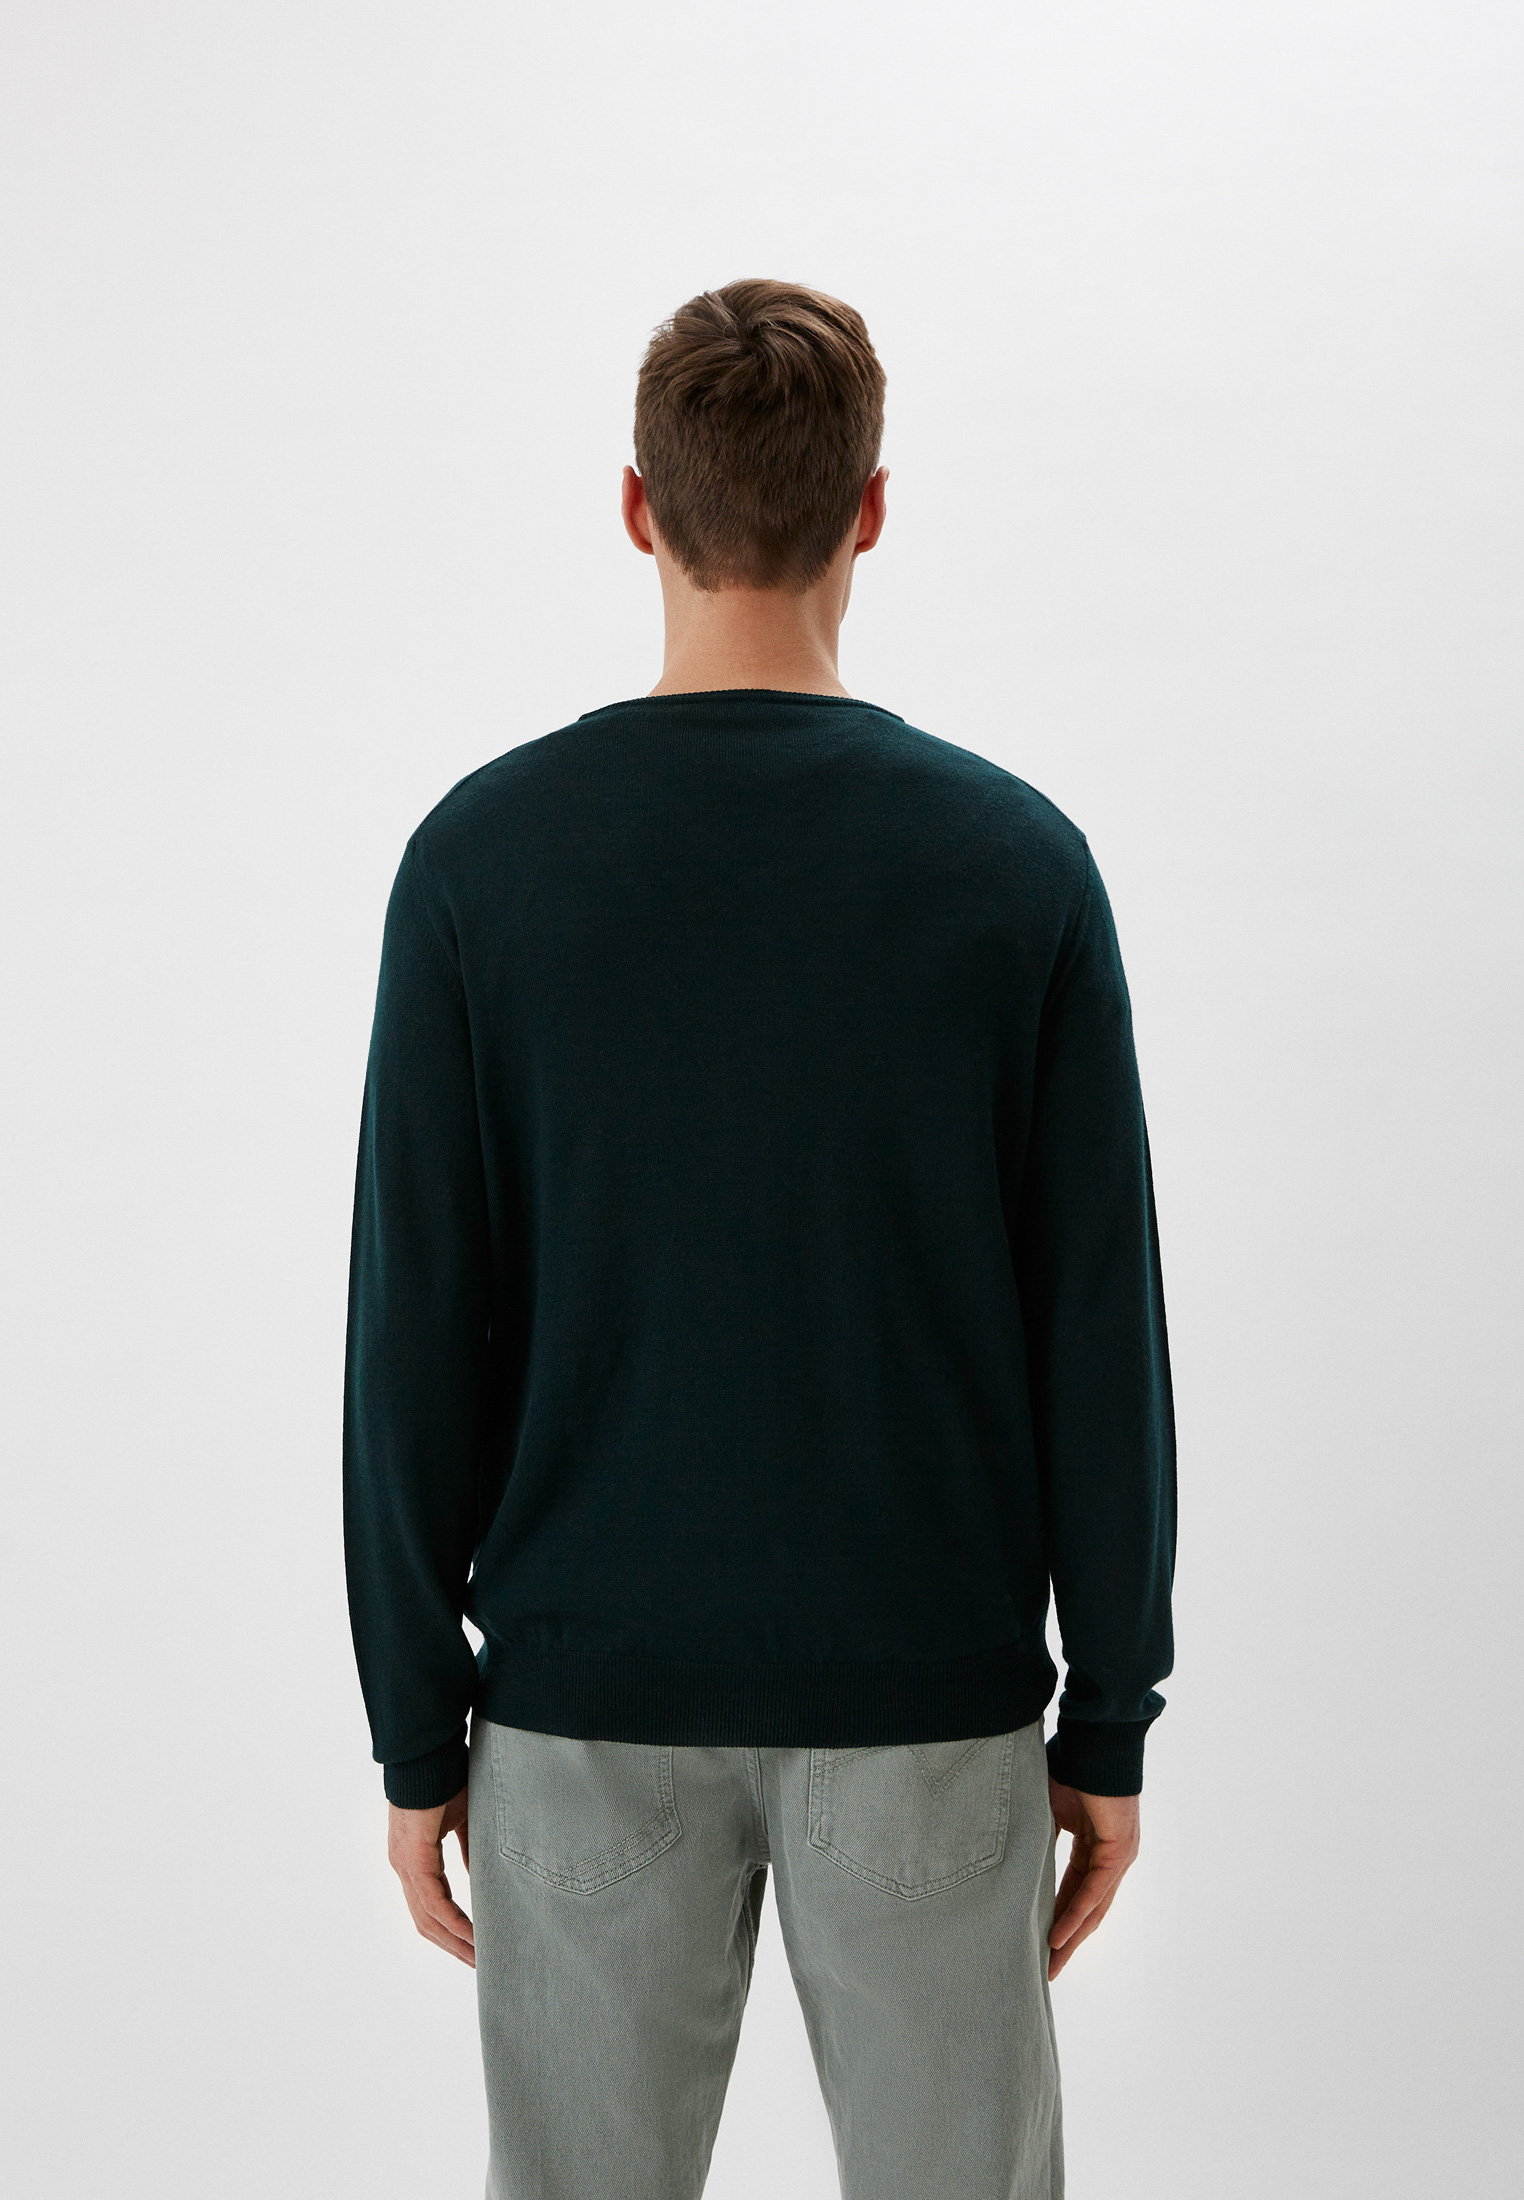 Пуловер Baldinini (Балдинини) MU02: изображение 3